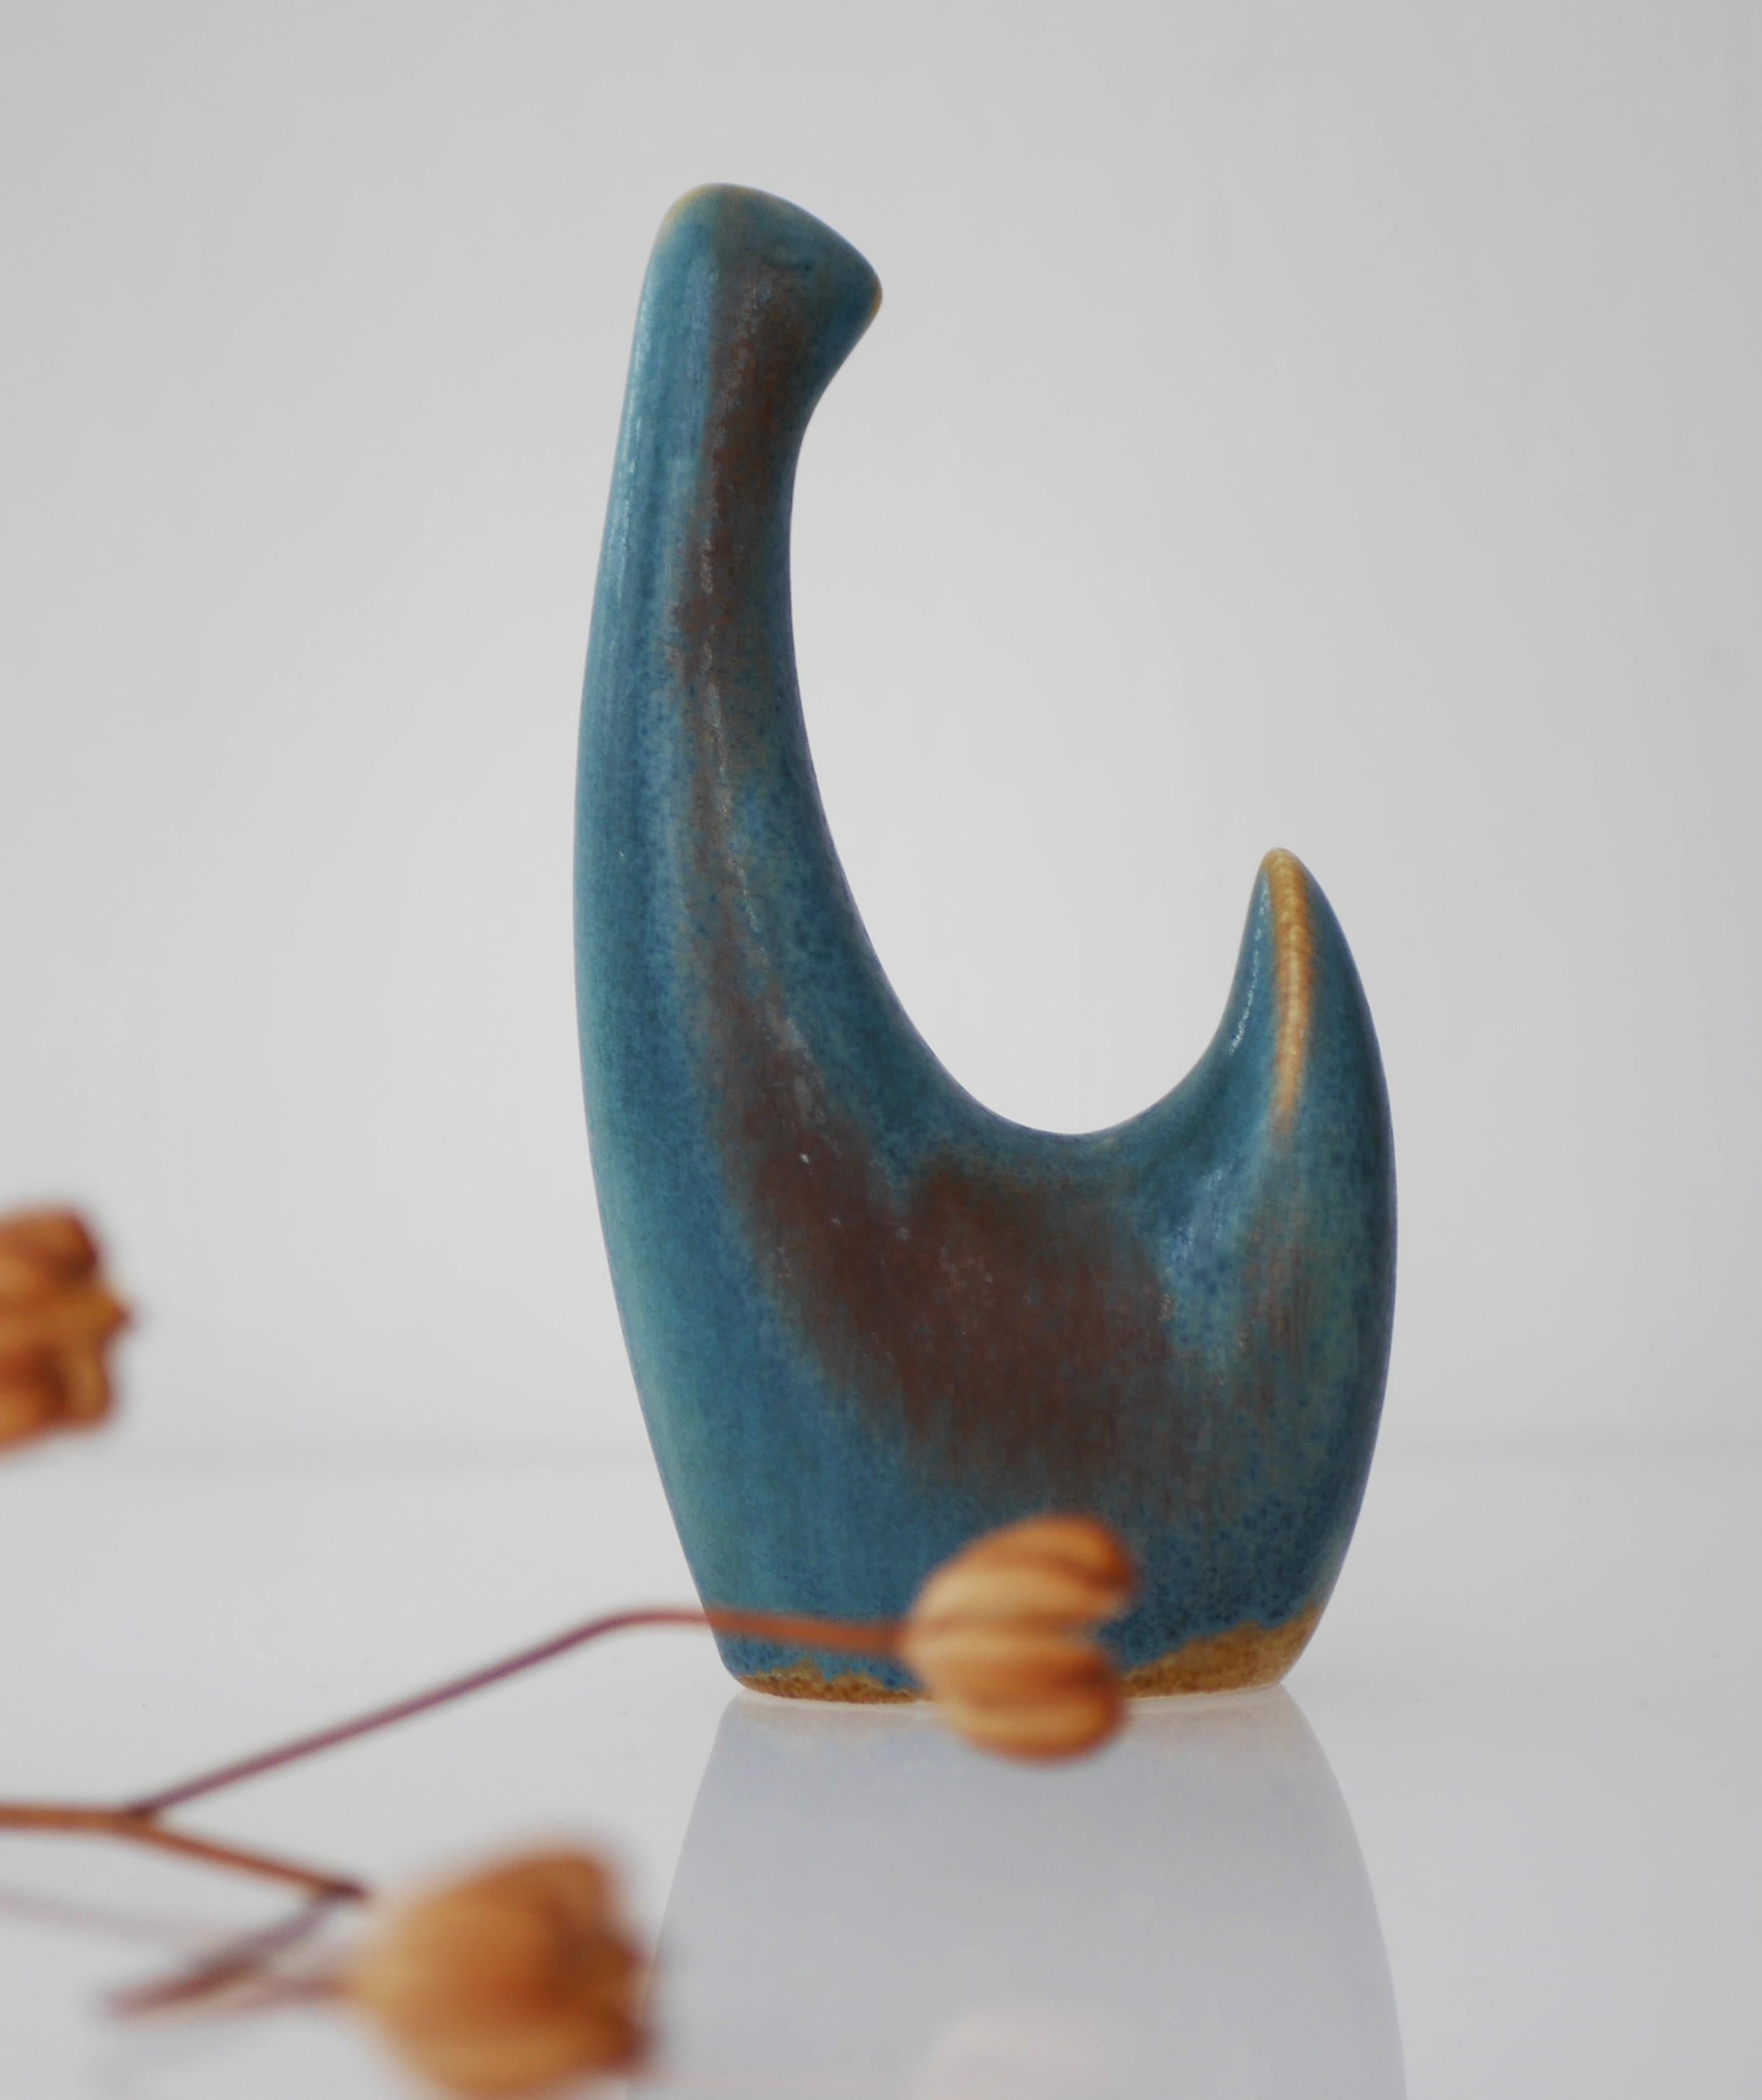 Un magnifique oiseau abstrait en céramique de Børge Jørgensen 'no 3800'. Figurine de coq en céramique avec une glaçure de Sven A. Jensen. Fabriqué par Söholm Ceramics, Bornholm, Danemark. C'est une trouvaille rare.

Jorgensen est un sculpteur danois